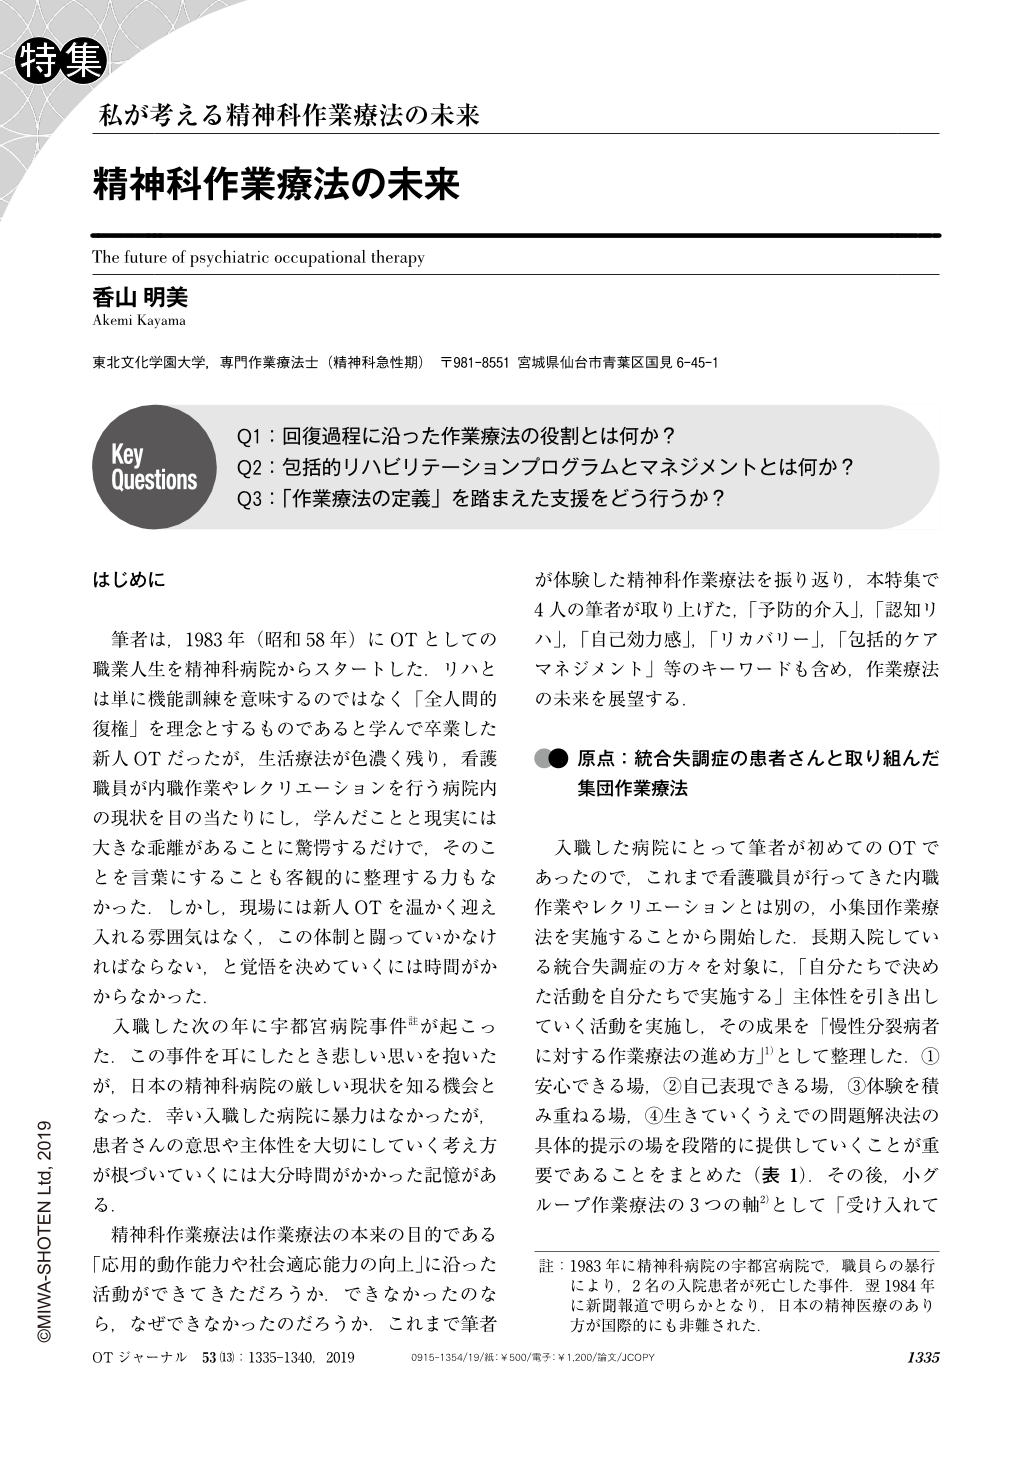 精神科作業療法の未来 作業療法ジャーナル 53巻13号 医書 Jp